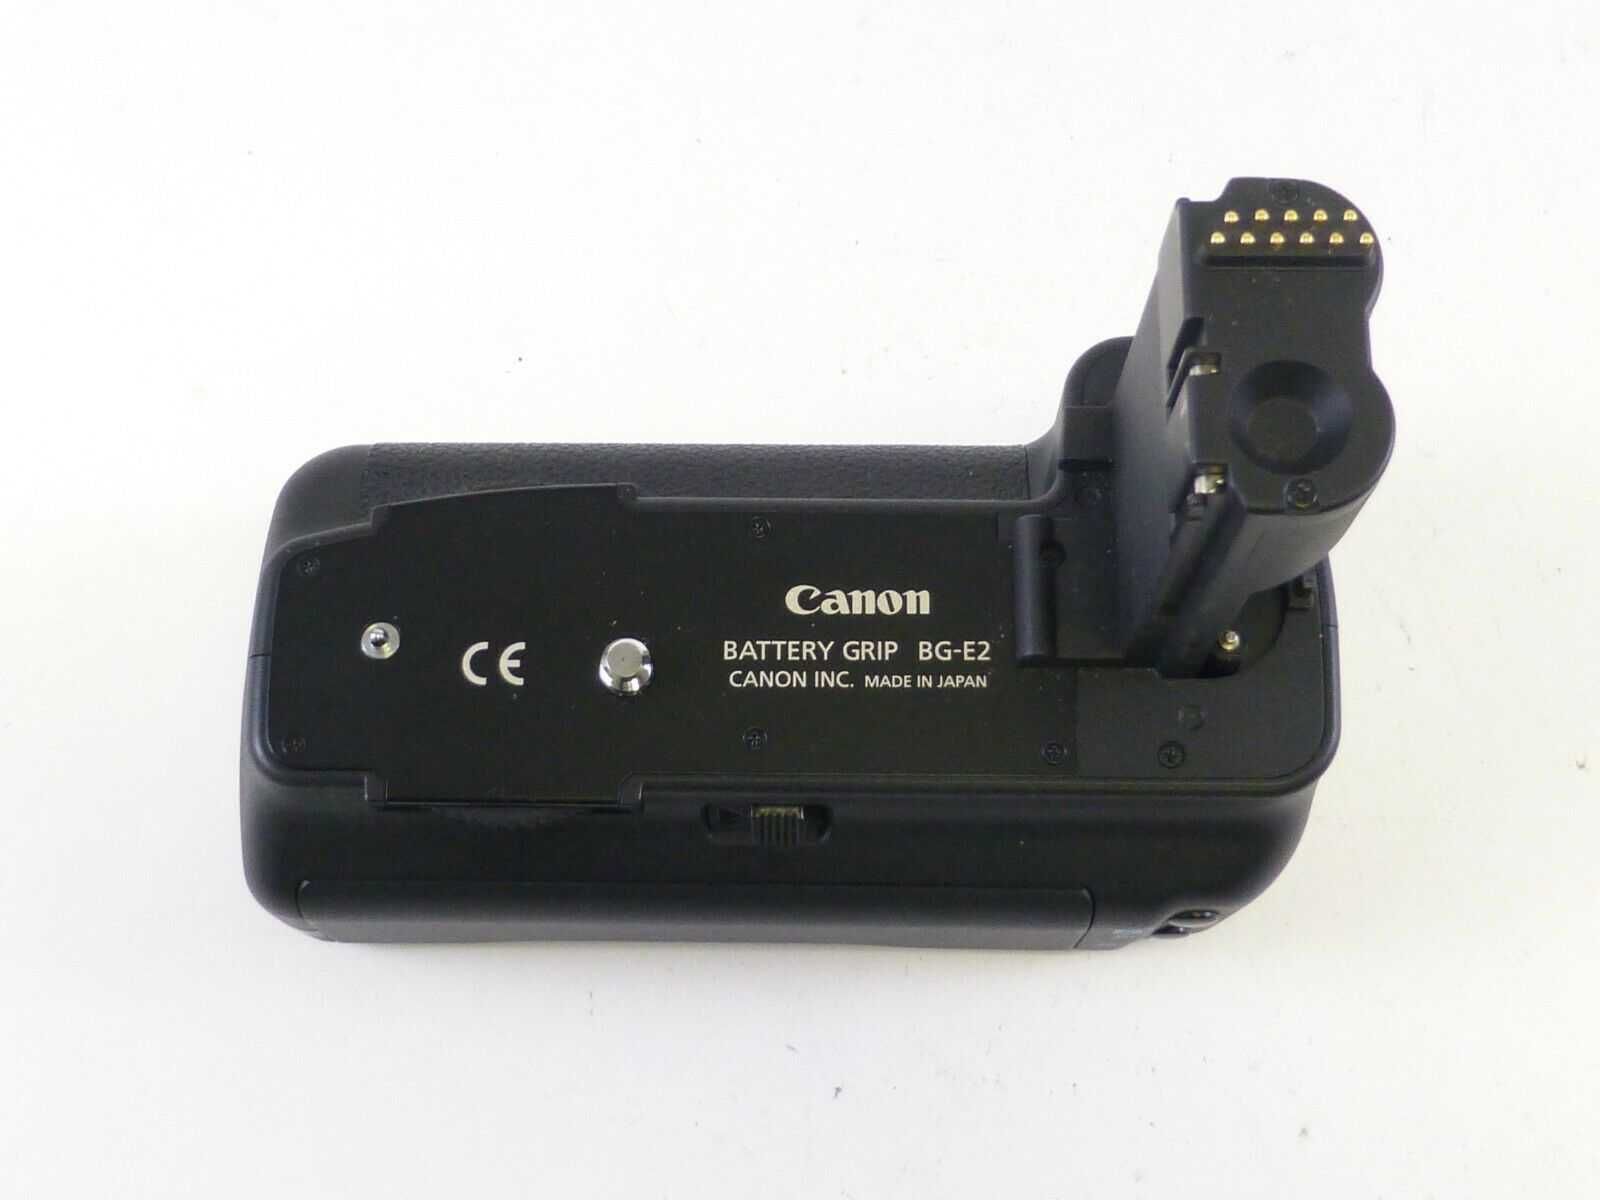 Canon EOS 20D estado novo